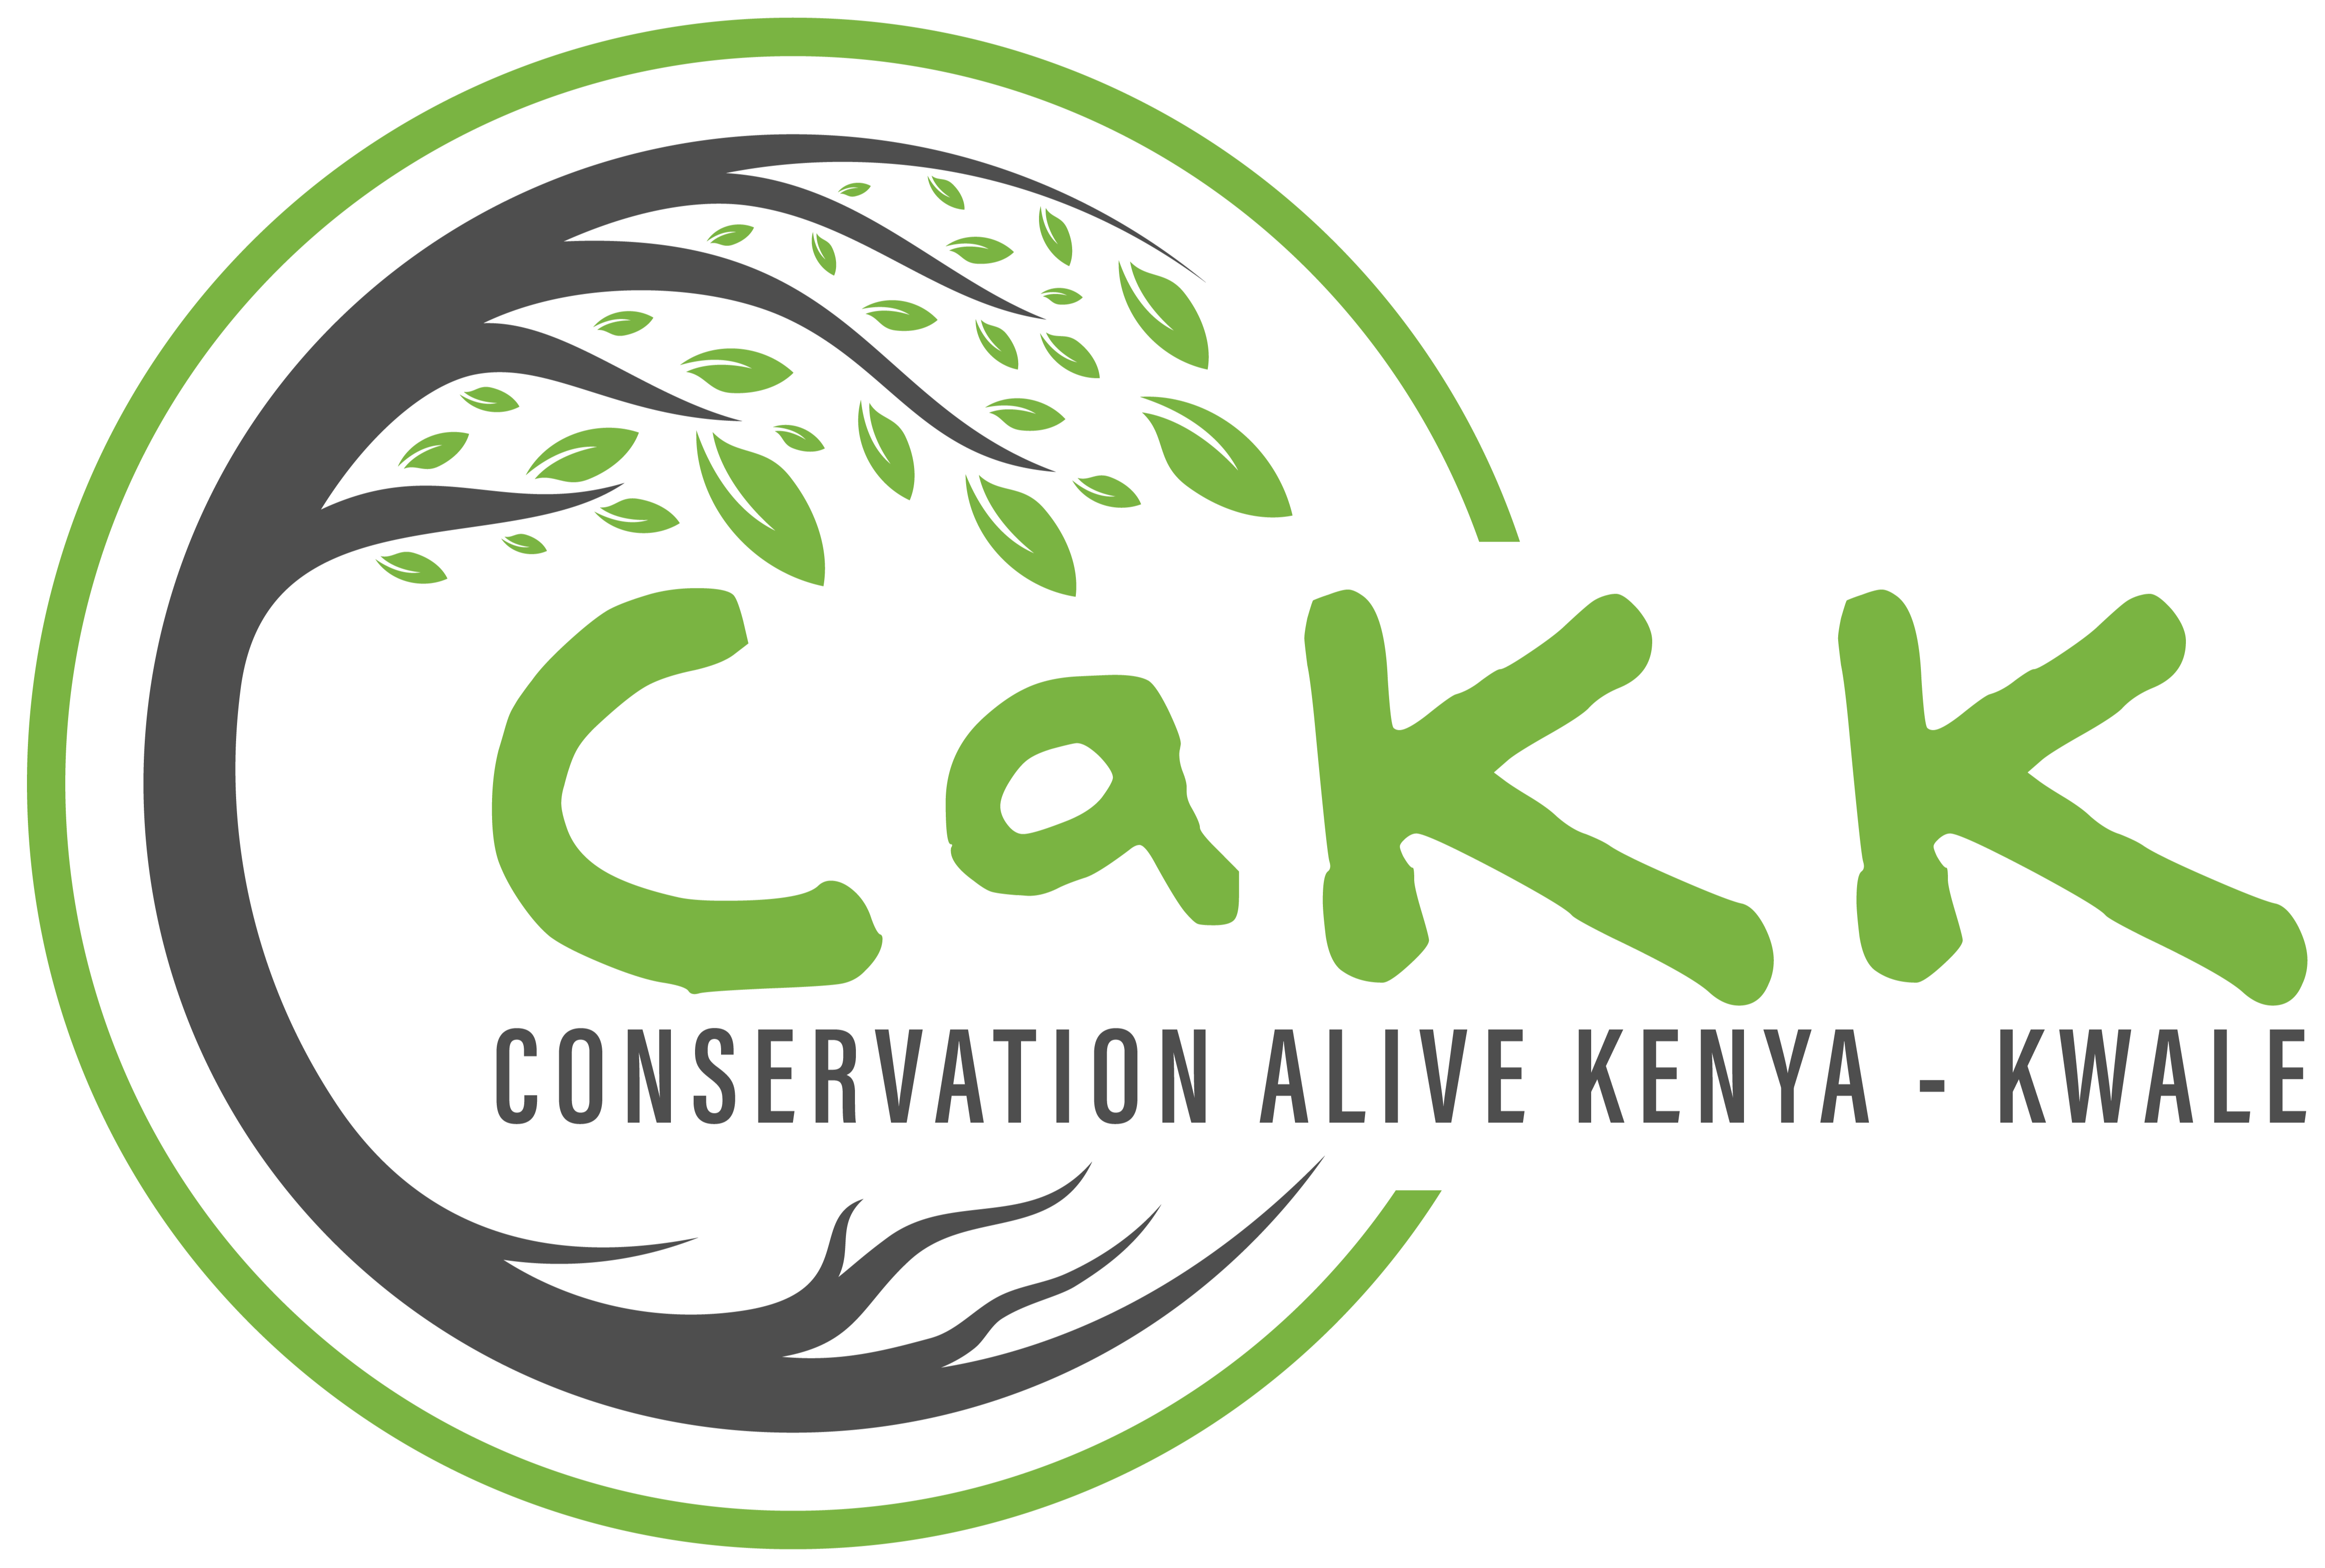 Conservation Alive Kenya - Kwale logo